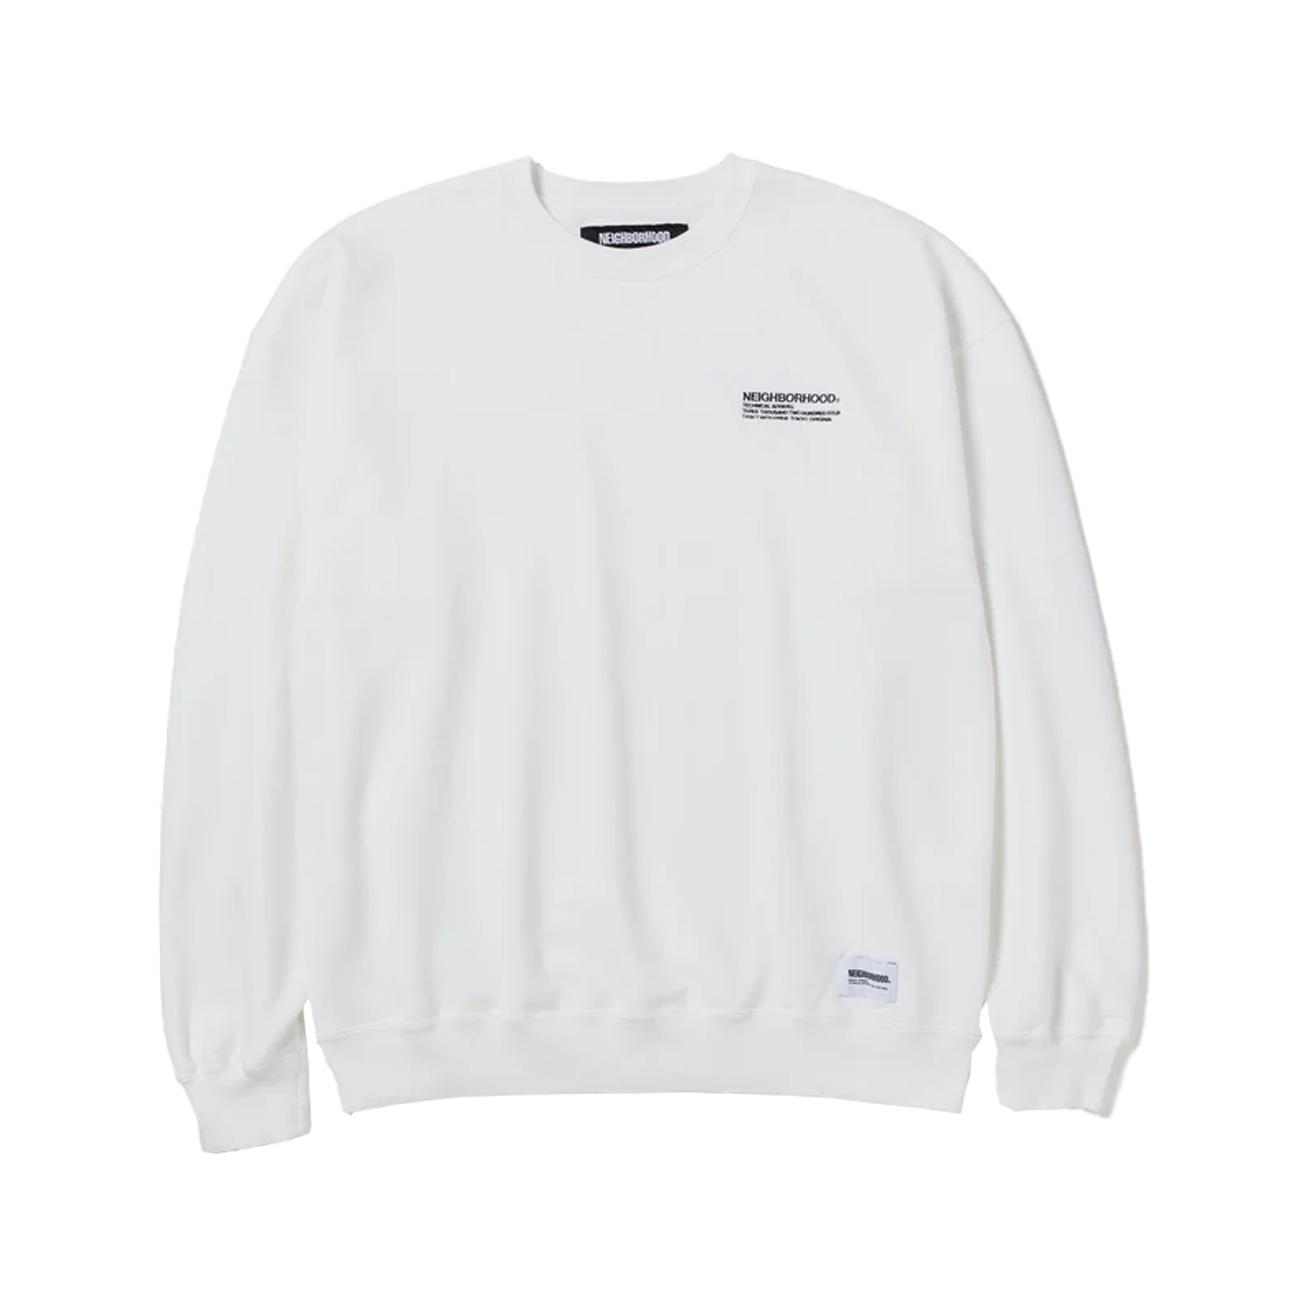 Neigborhood Sweater (Weiß)  - Cheap Juzsports Jordan Outlet